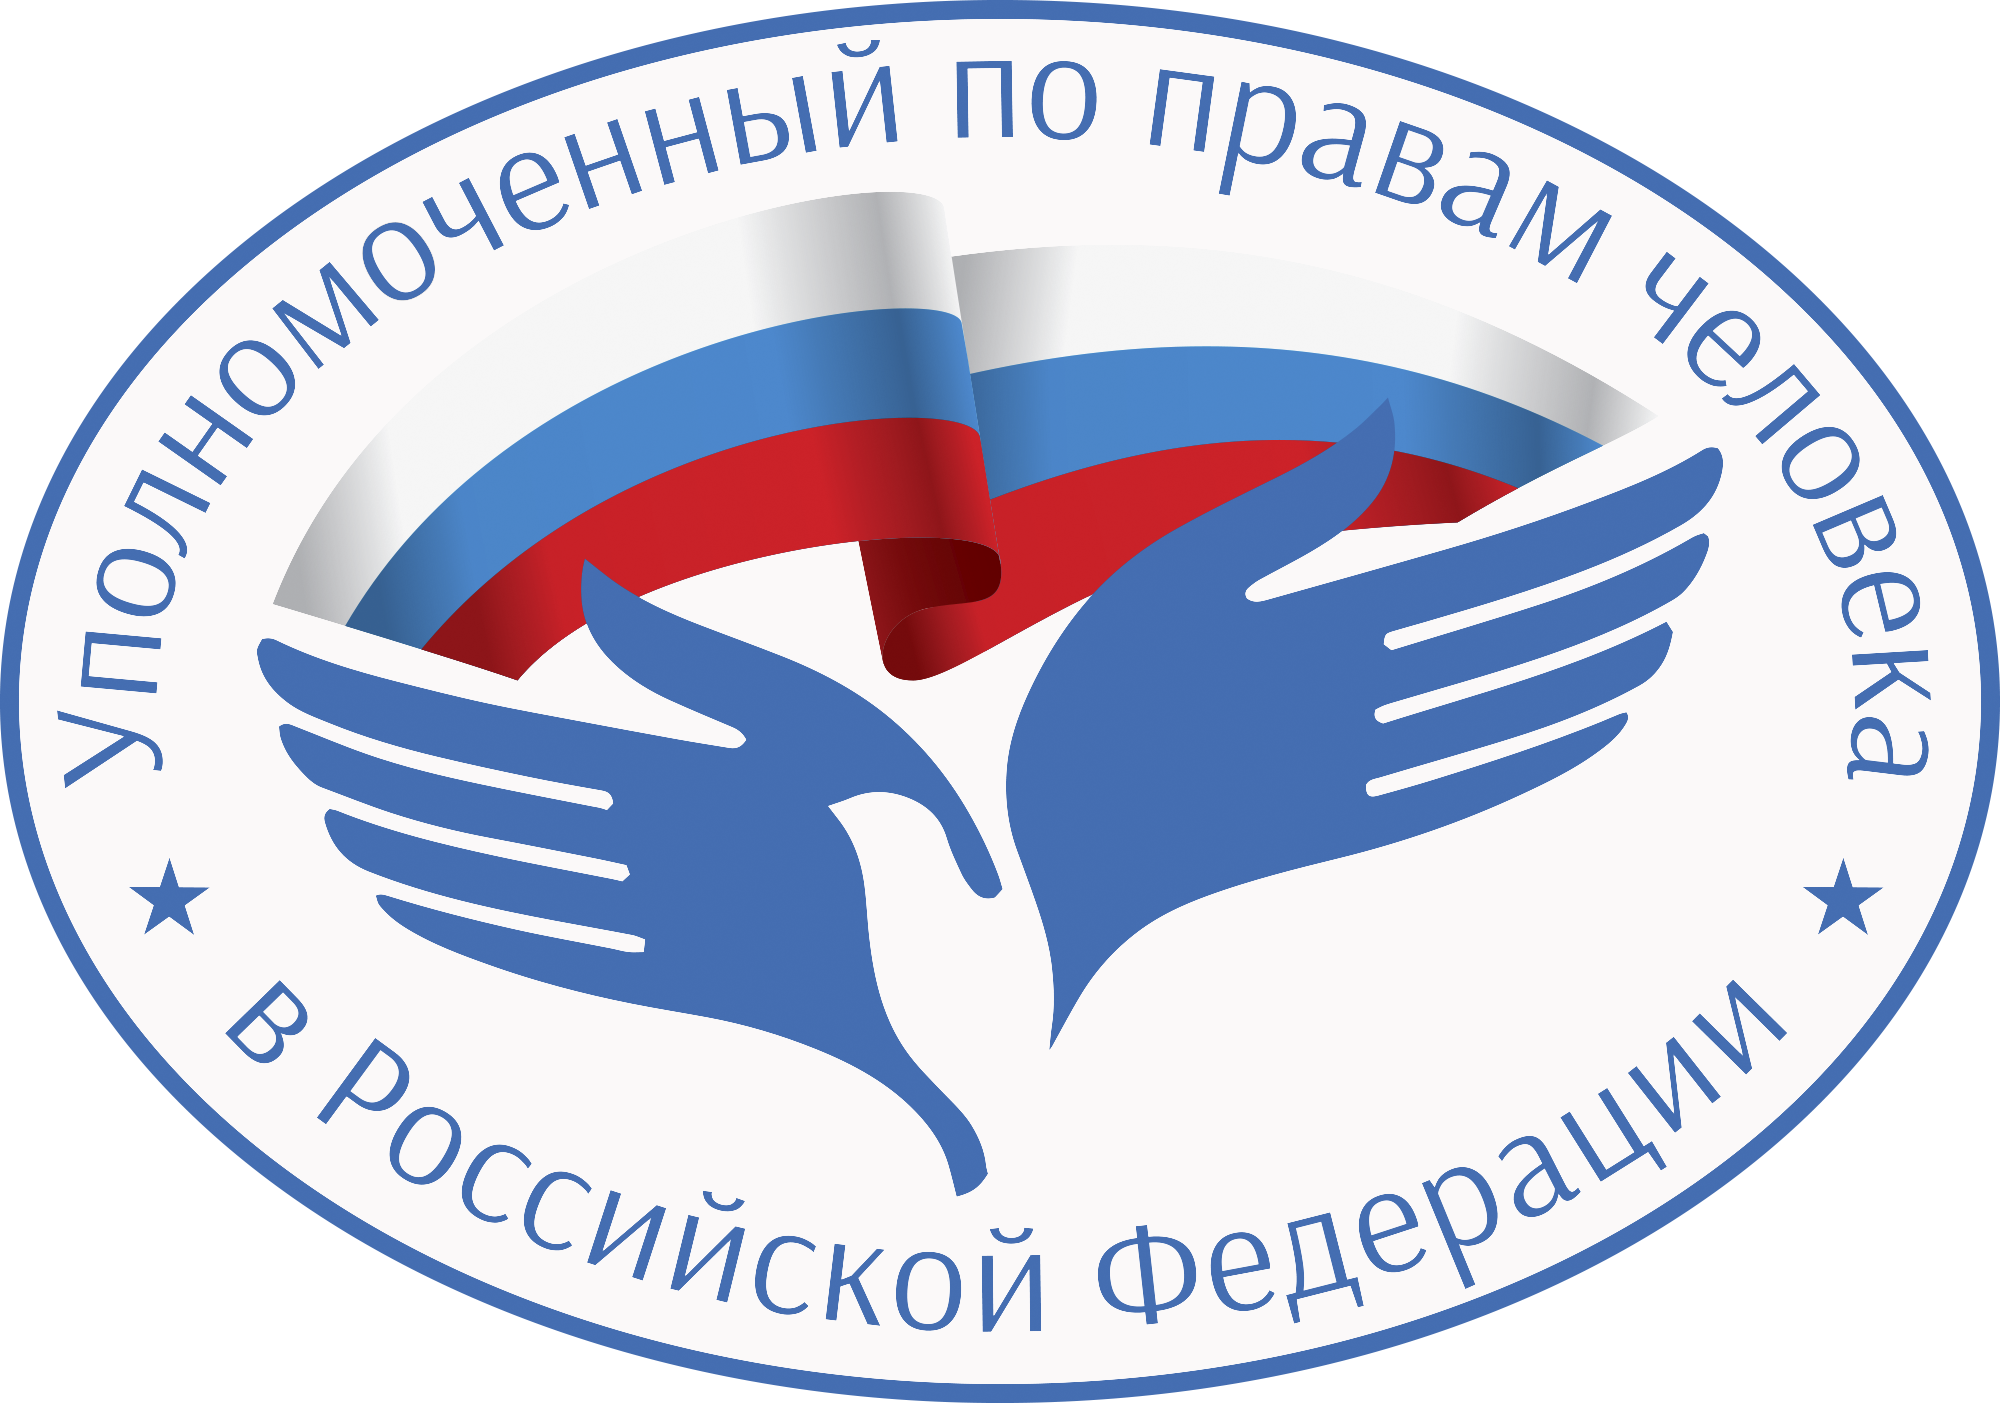 31 марта состоится Всероссийский единый день оказания бесплатной юридической помощи.